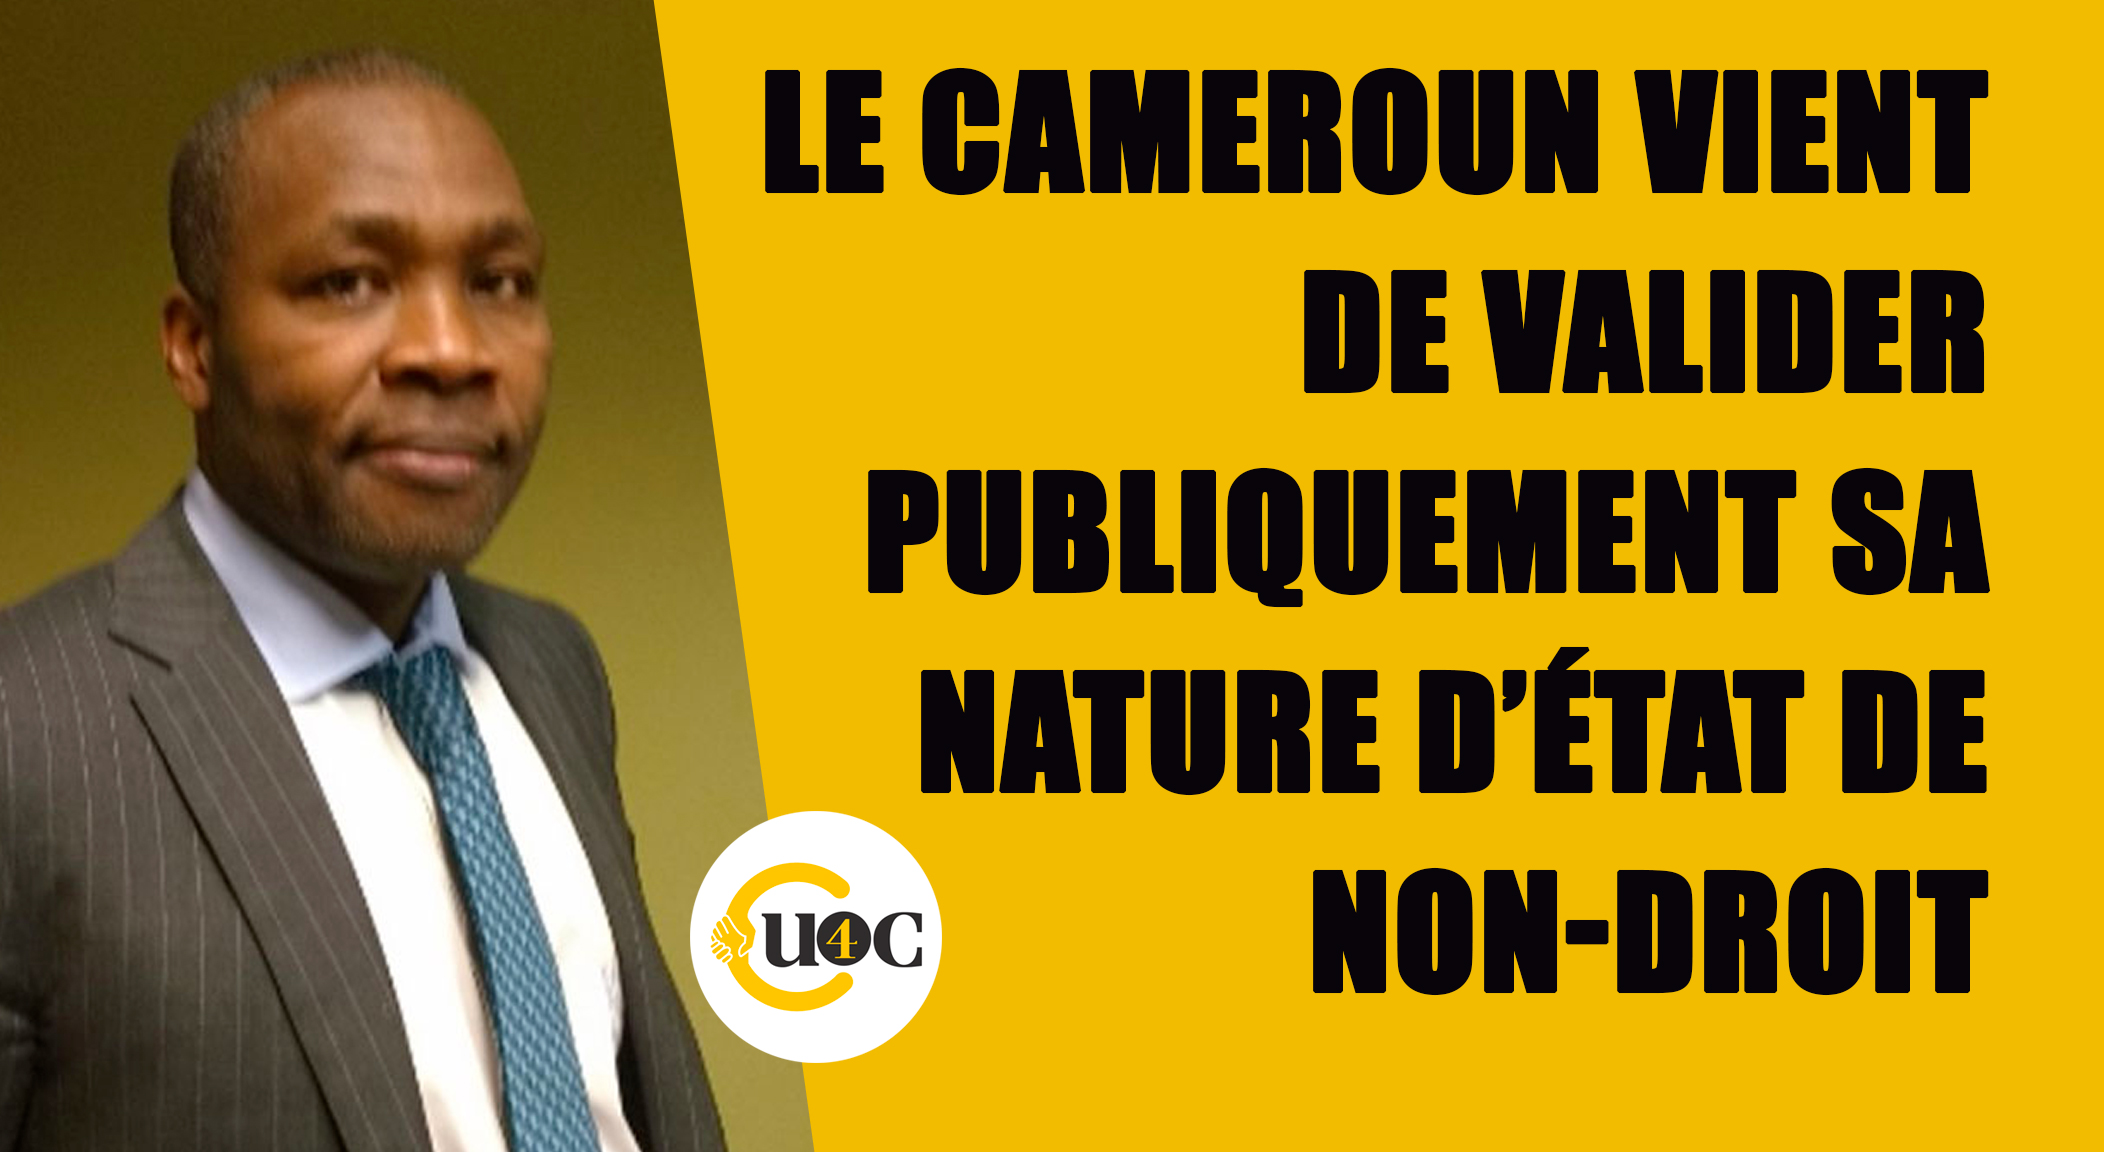 Le Cameroun valide publiquement sa nature d’État de non-droit